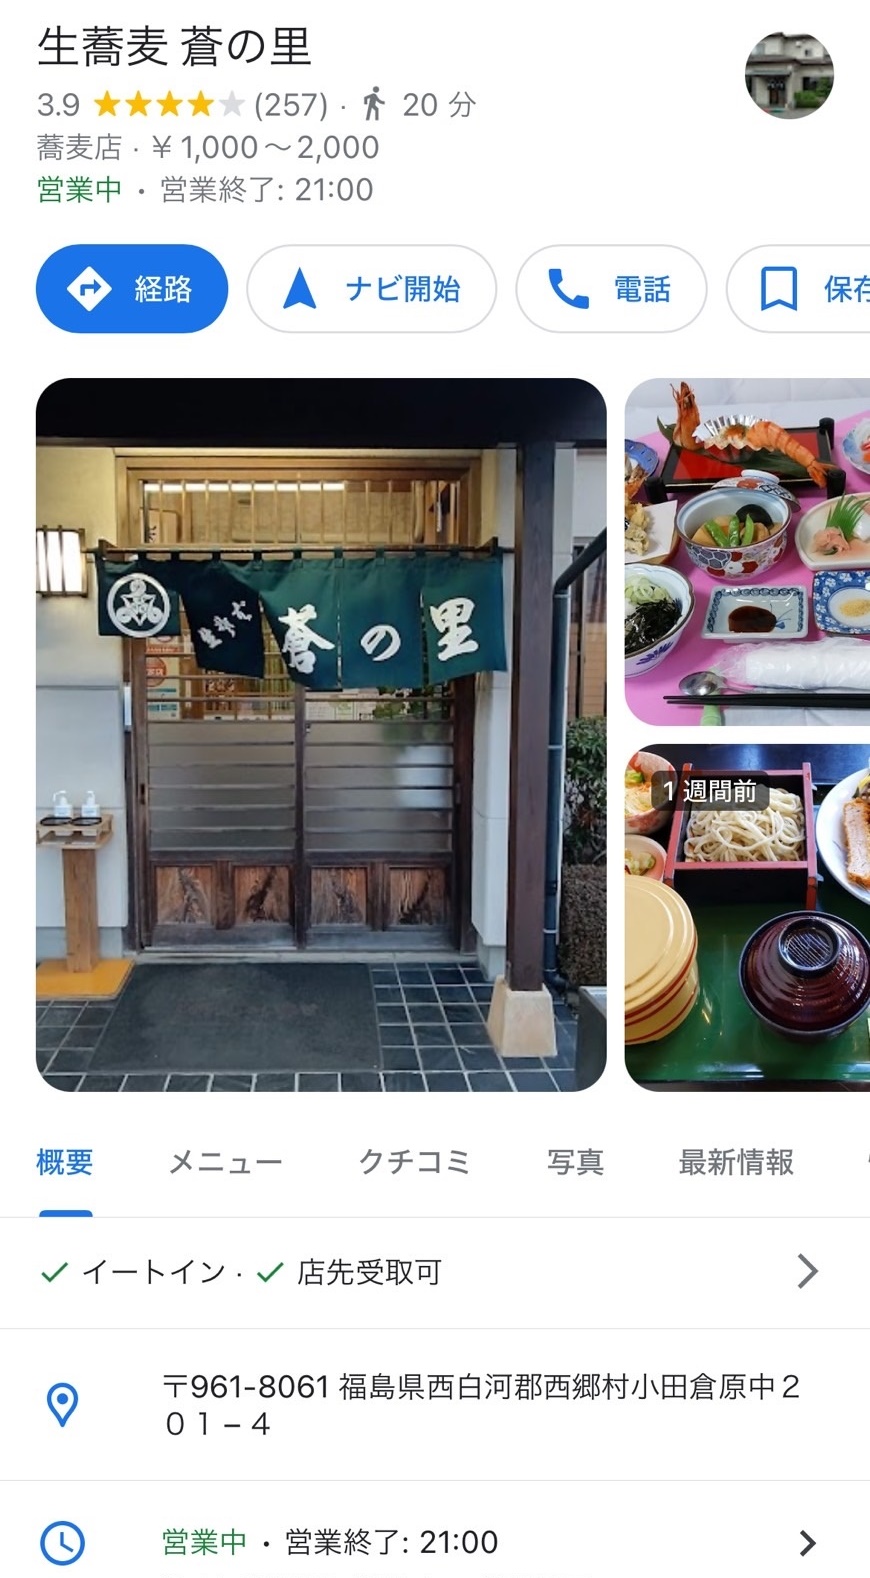 お蕎麦屋さんランチ♪西郷村「蒼の里」 FBT新白河店のブログ 写真1